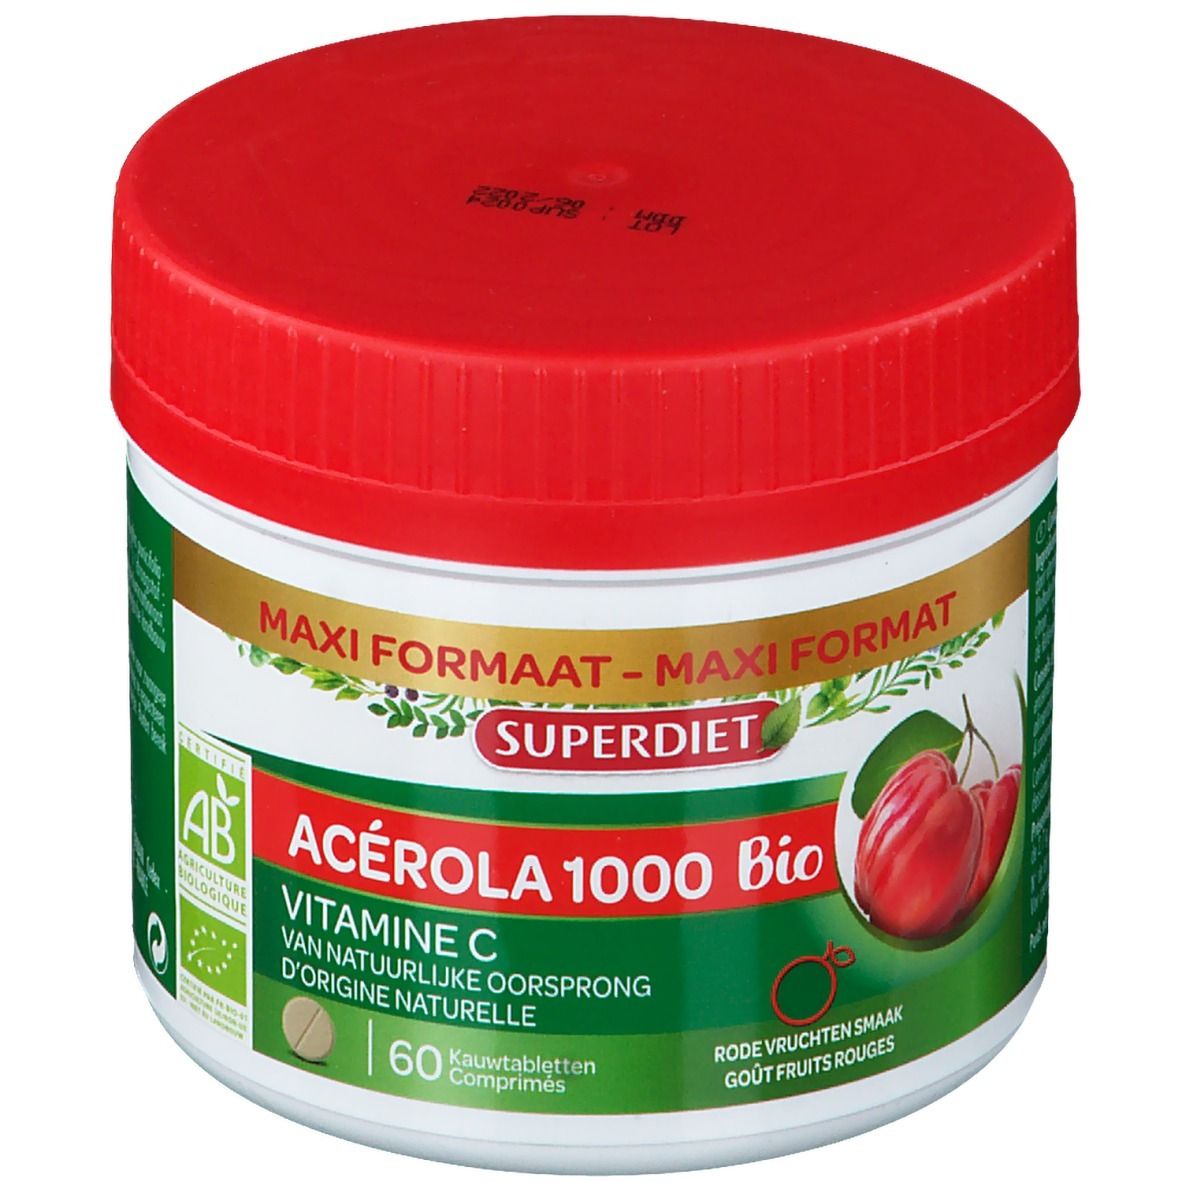 Super Diet Acérola 1000 Bio